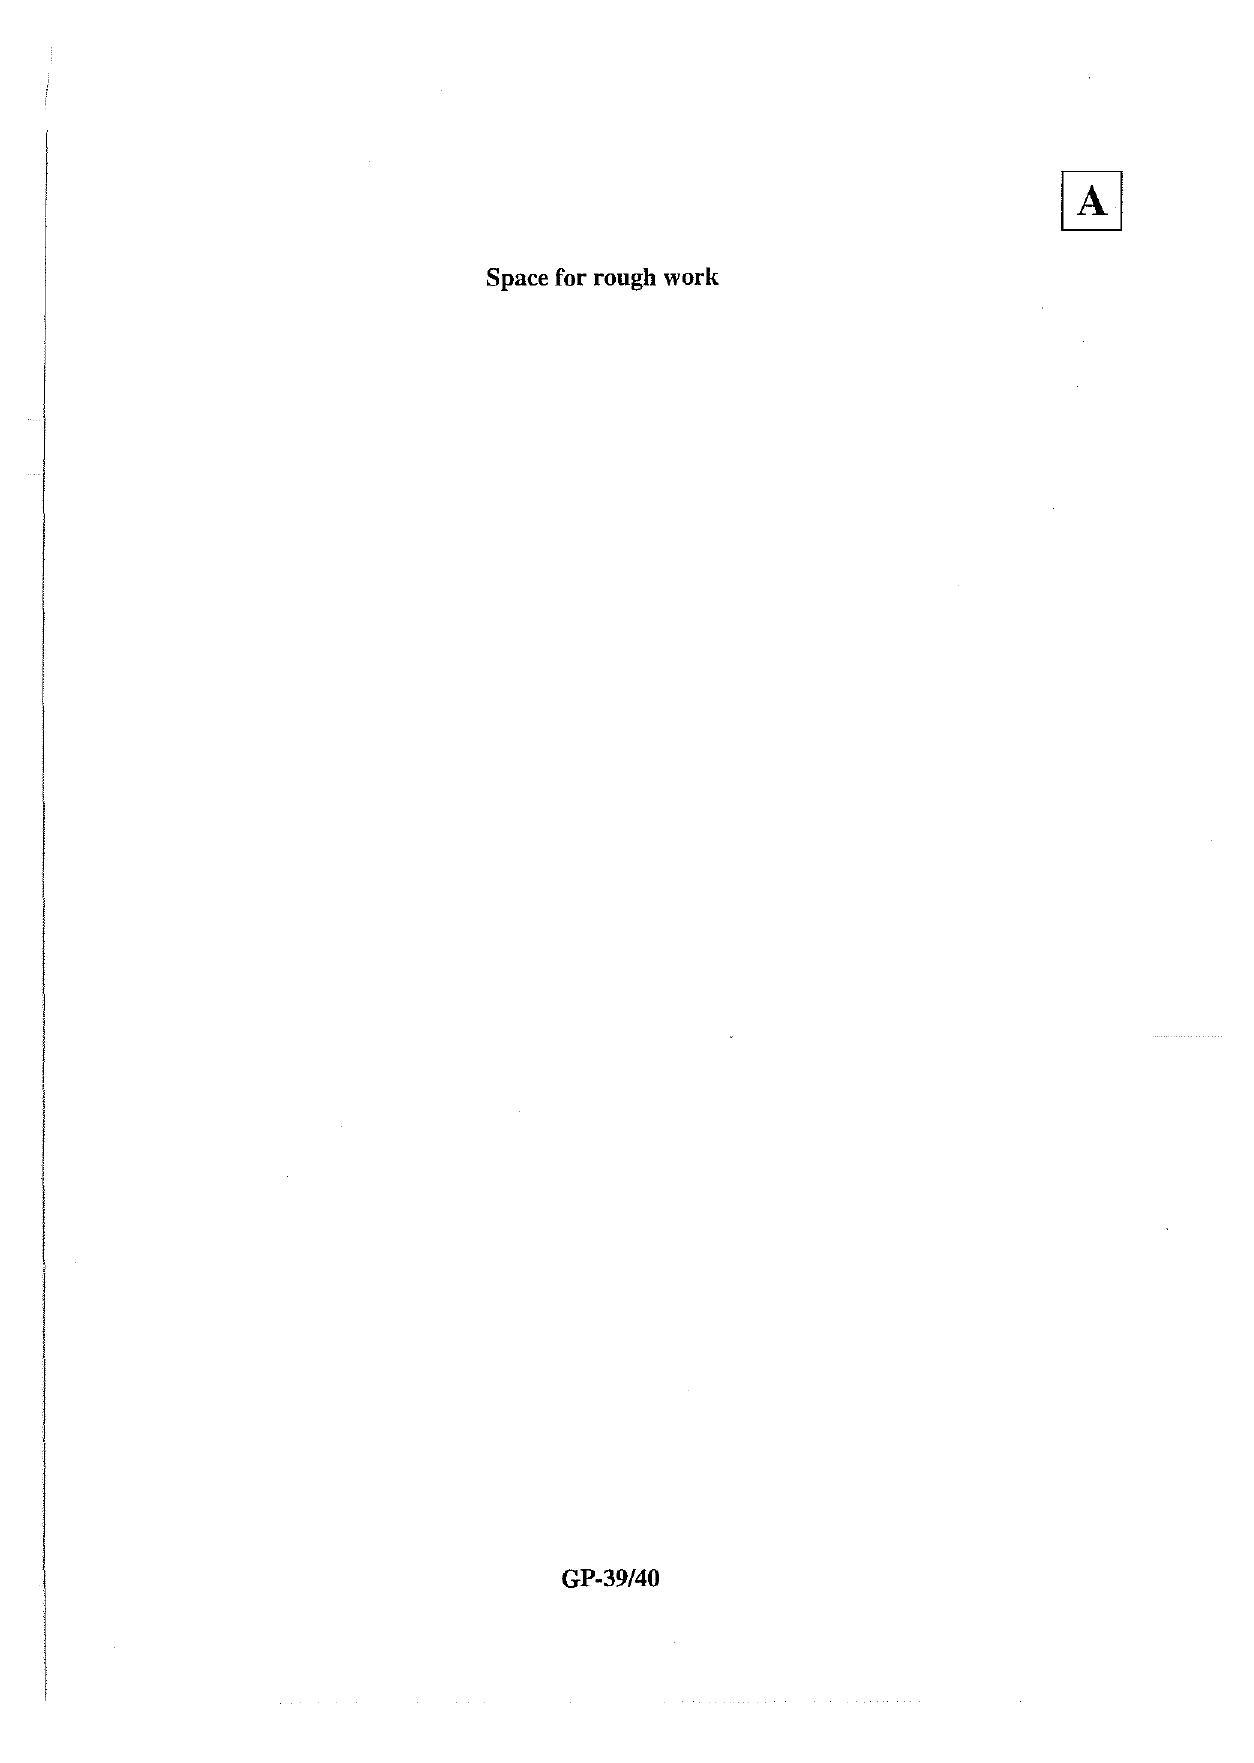 JAM 2013: GP Question Paper - Page 40